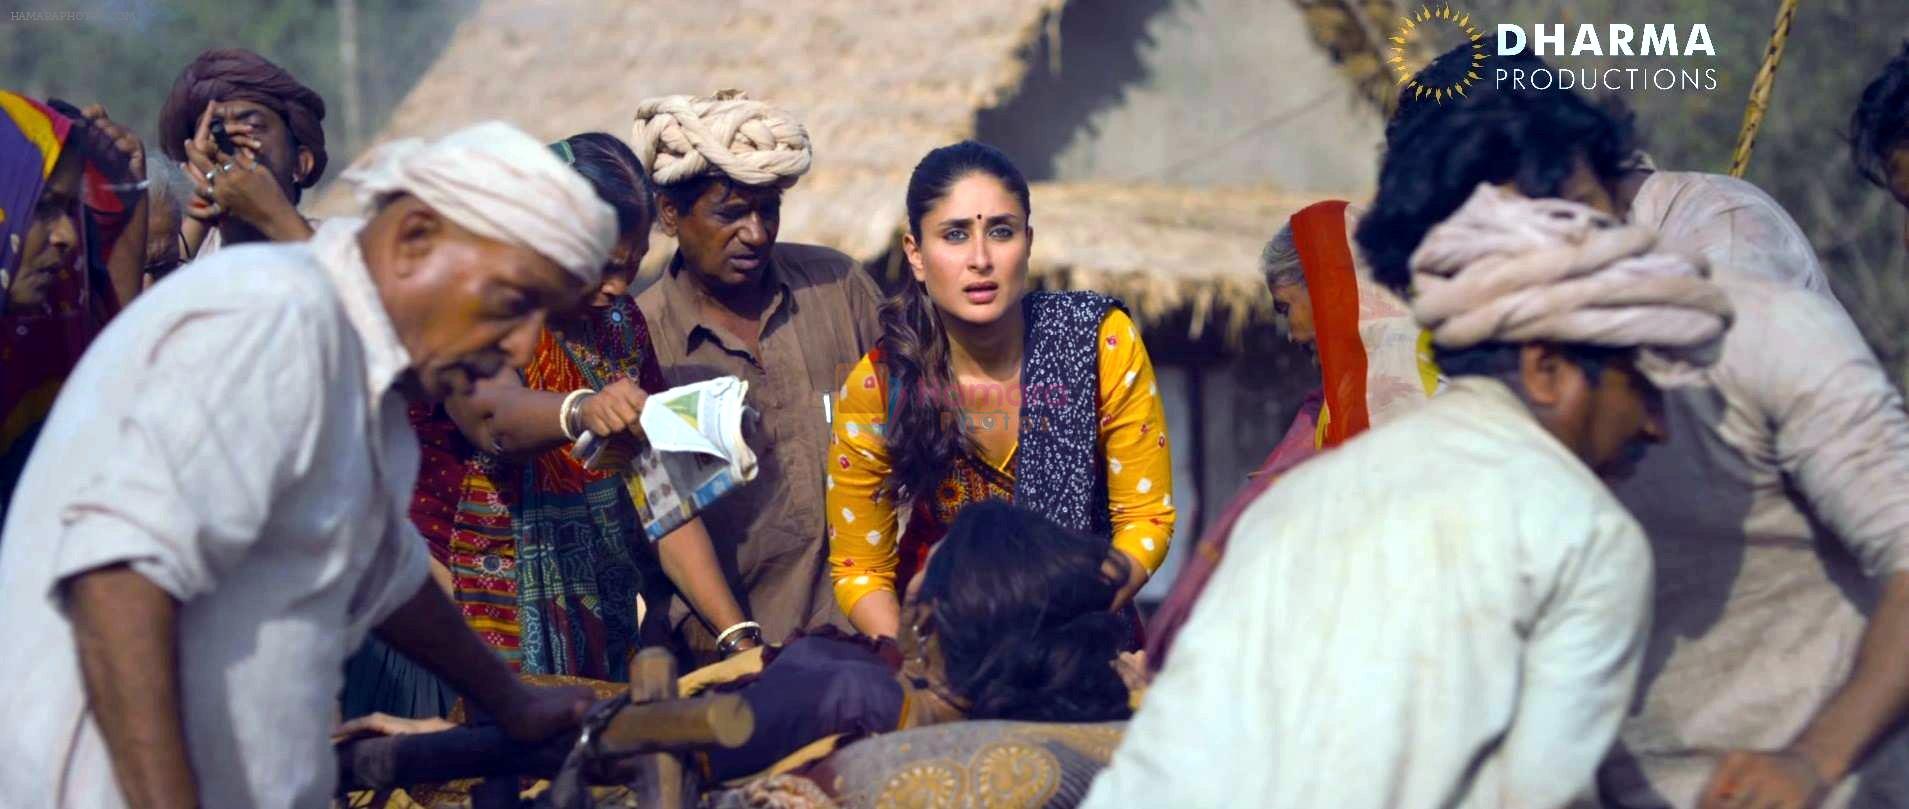 Kareena Kapoor in still from the movie Gori Tere Pyaar Mein